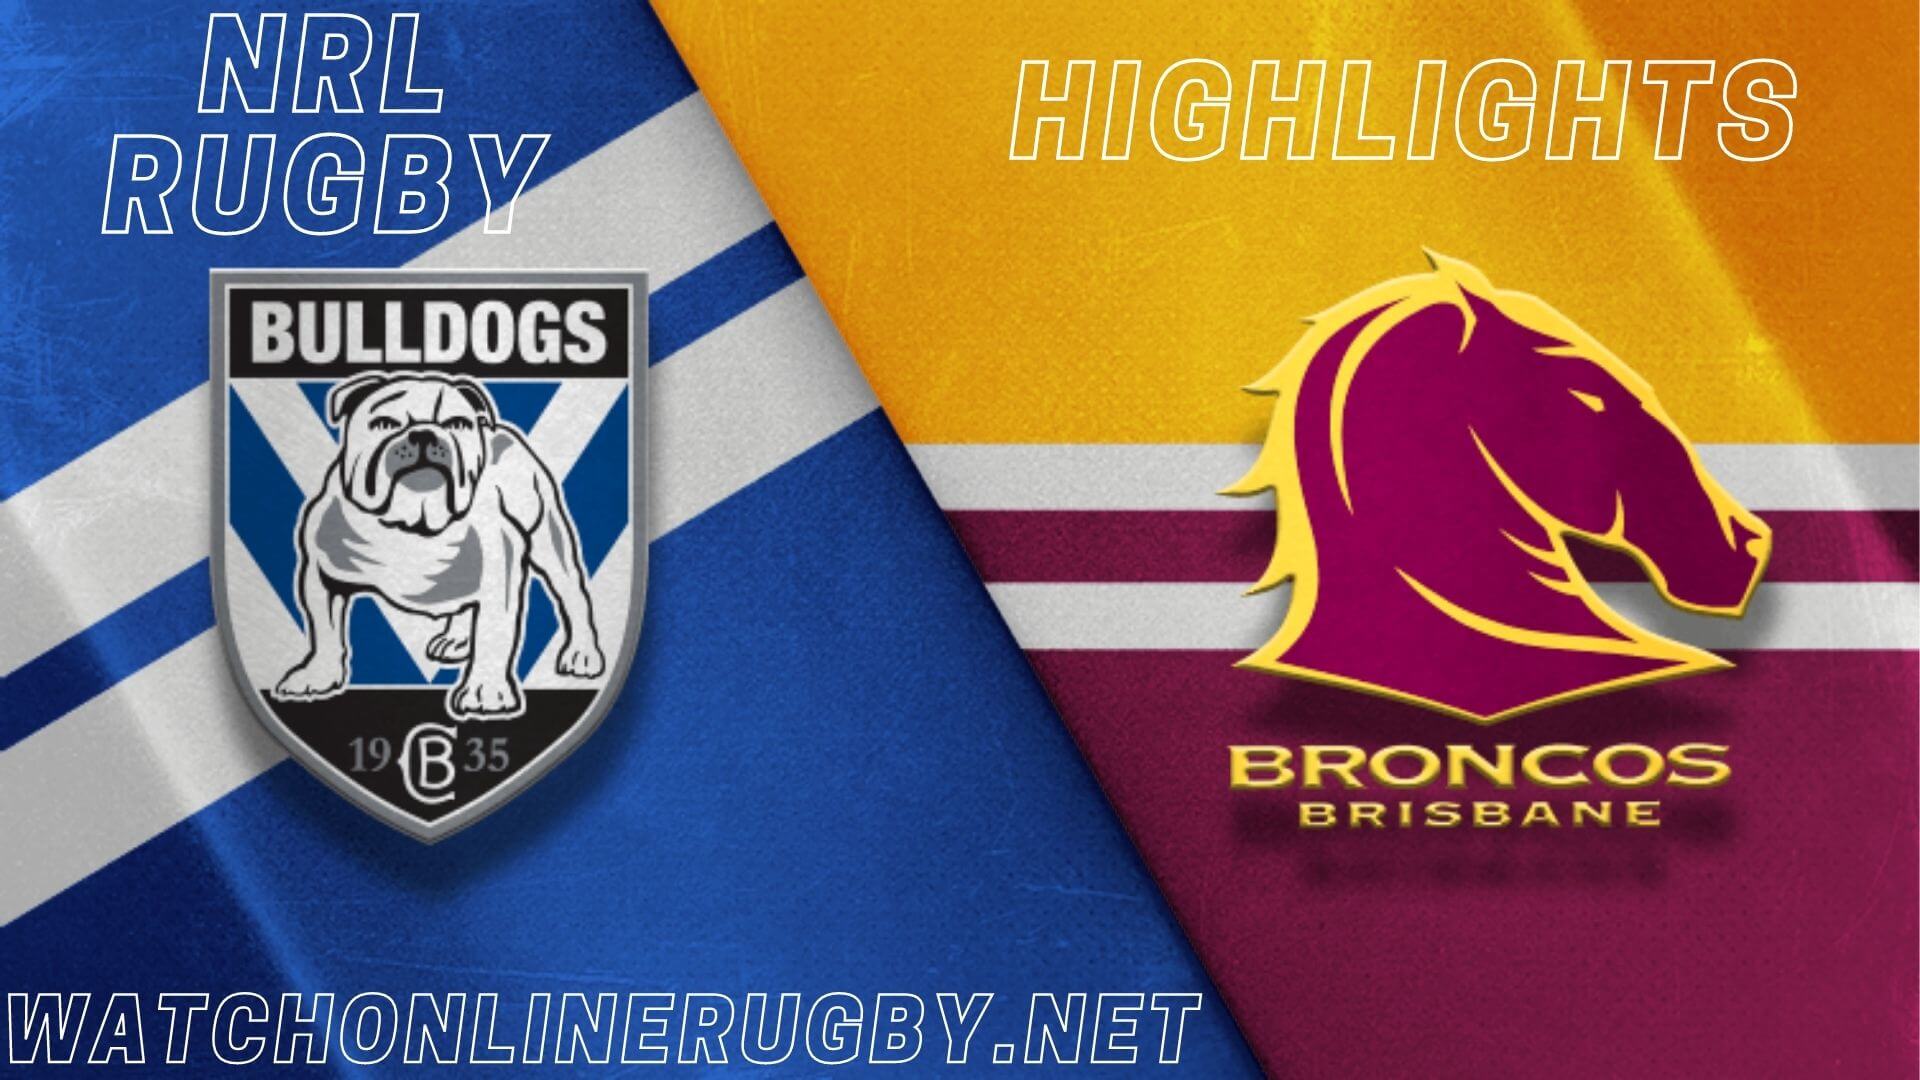 Bulldogs Vs Broncos Highlights RD 2 NRL Rugby